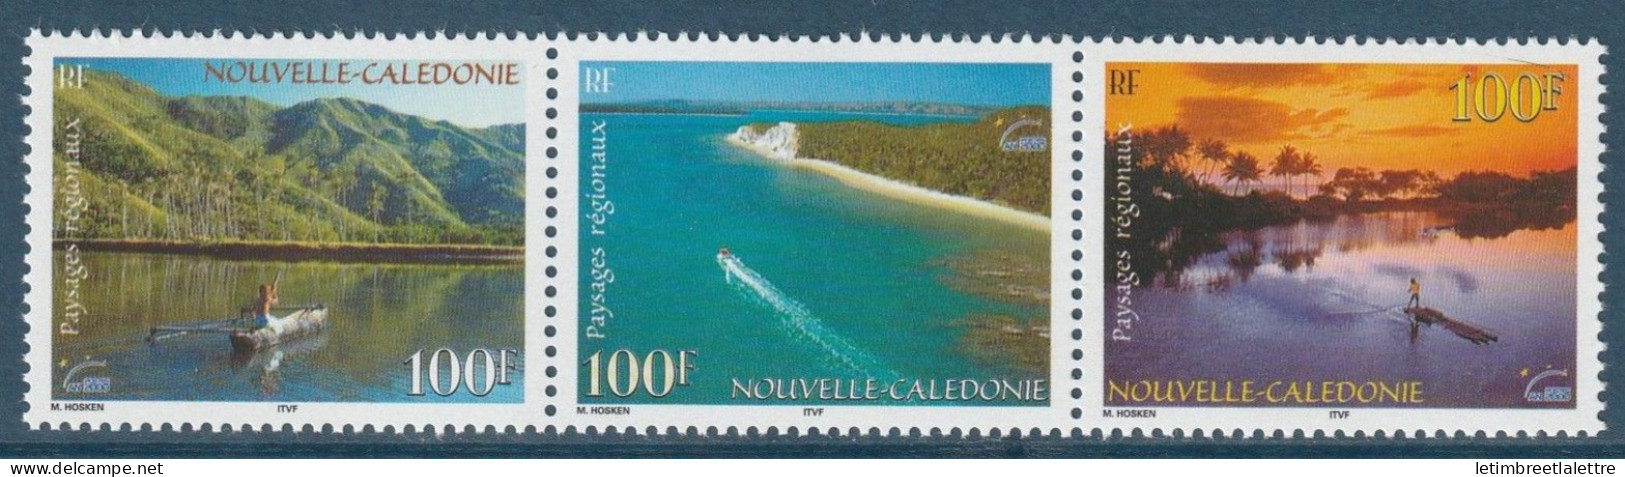 Nouvelle Calédonie - YT N° 827 à 829 ** - Neuf Sans Charnière - 2000 - Neufs